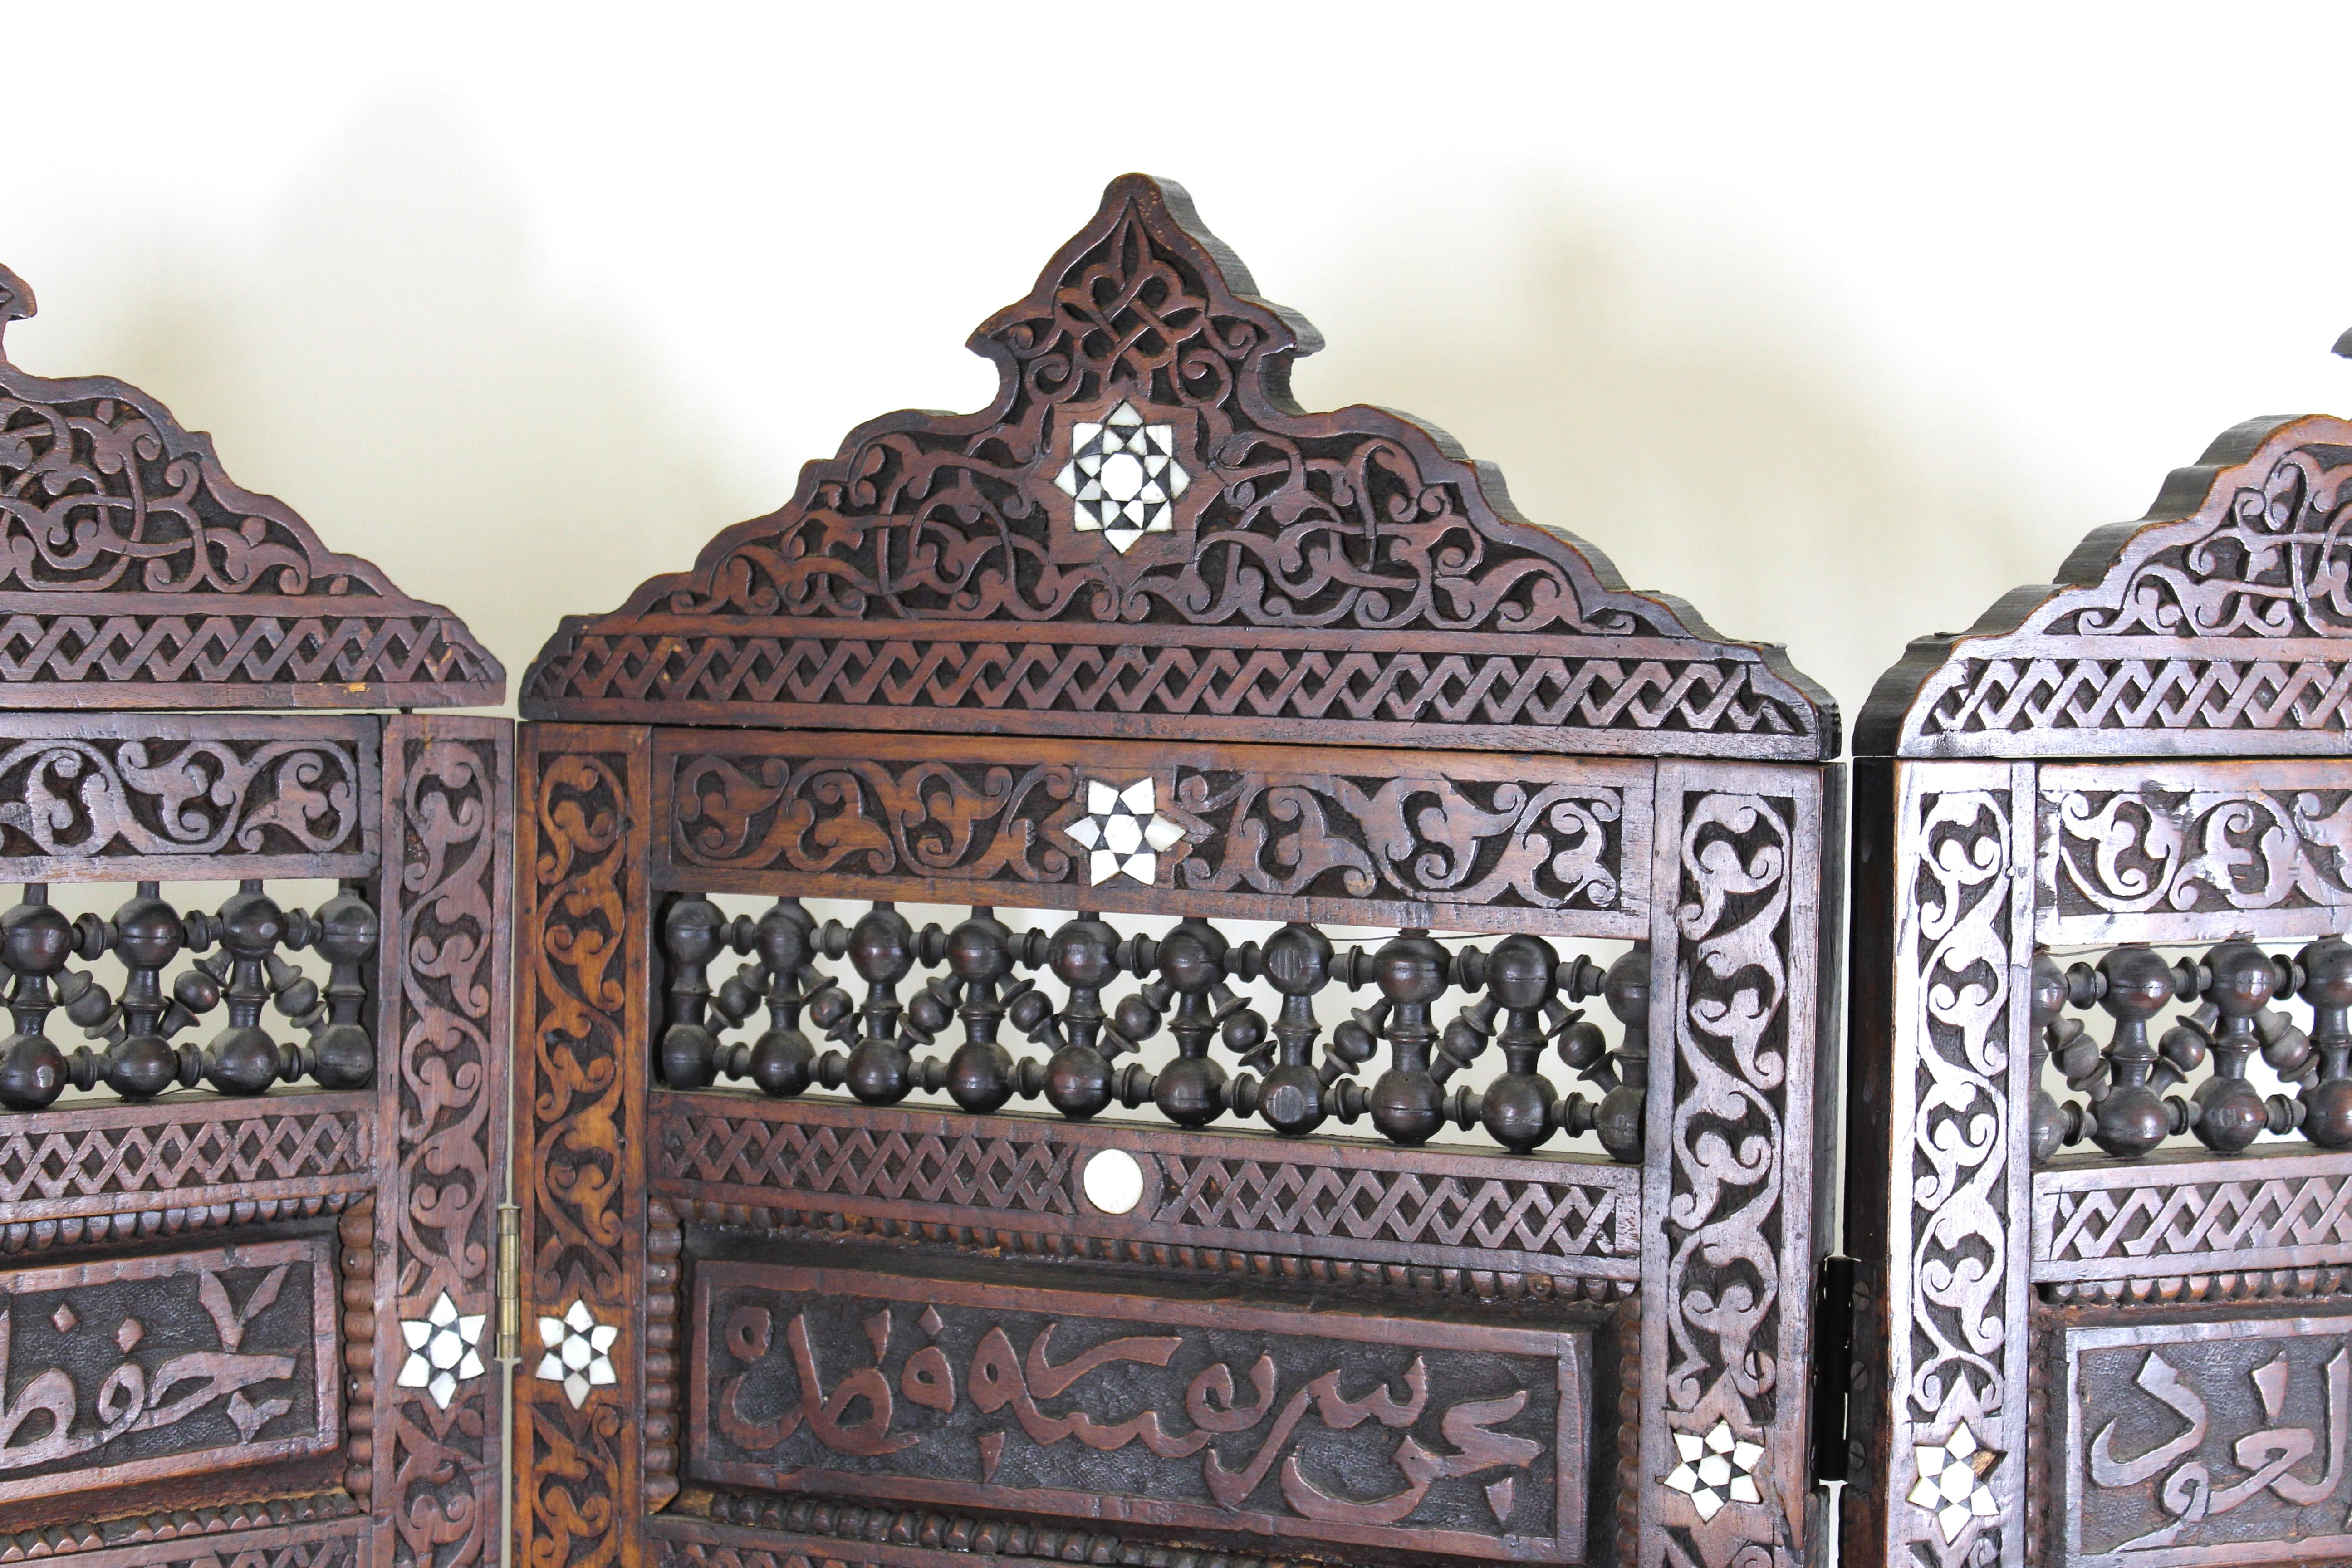 Paravent ou pare-feu d'époque esthétique marocaine à trois panneaux en bois sculpté avec incrustation de nacre et éléments de moucharabieh. Fabriqué au Maroc dans les années 1870. Quelques pertes dans la marqueterie de nacre.